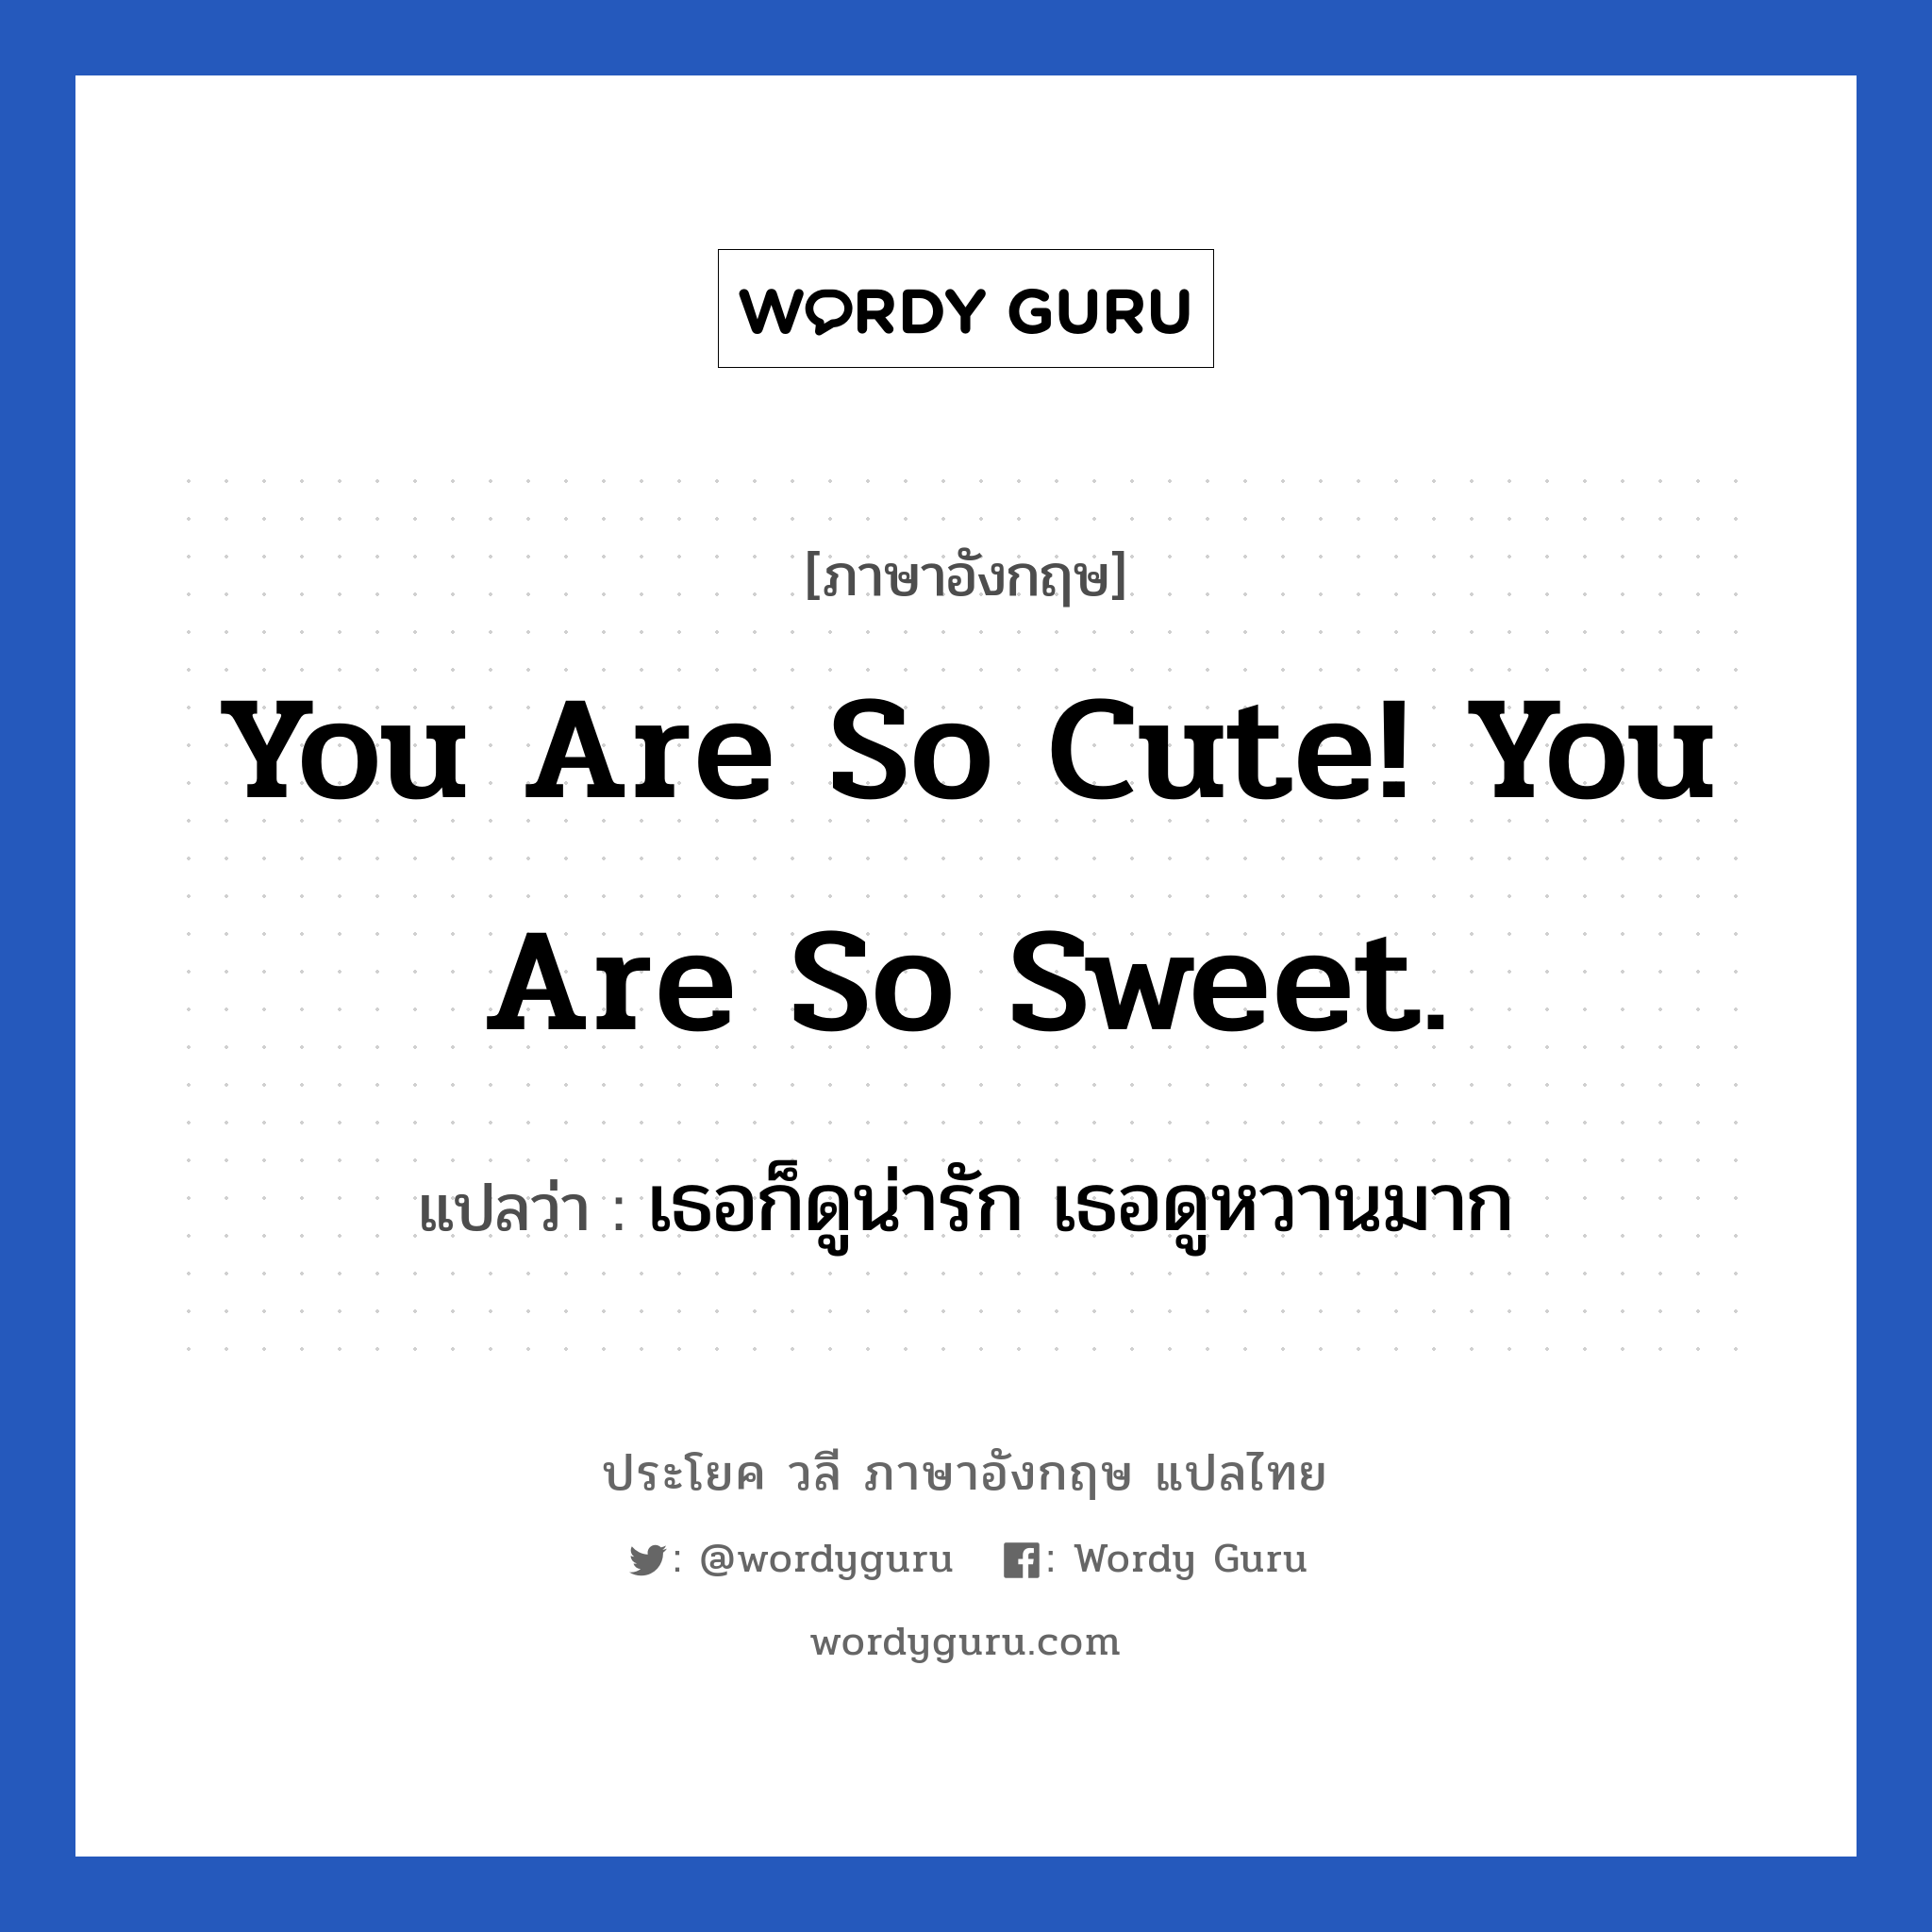 You are so cute! You are so sweet. แปลว่า?, วลีภาษาอังกฤษ You are so cute! You are so sweet. แปลว่า เธอก็ดูน่ารัก เธอดูหวานมาก หมวด คำชมเชย